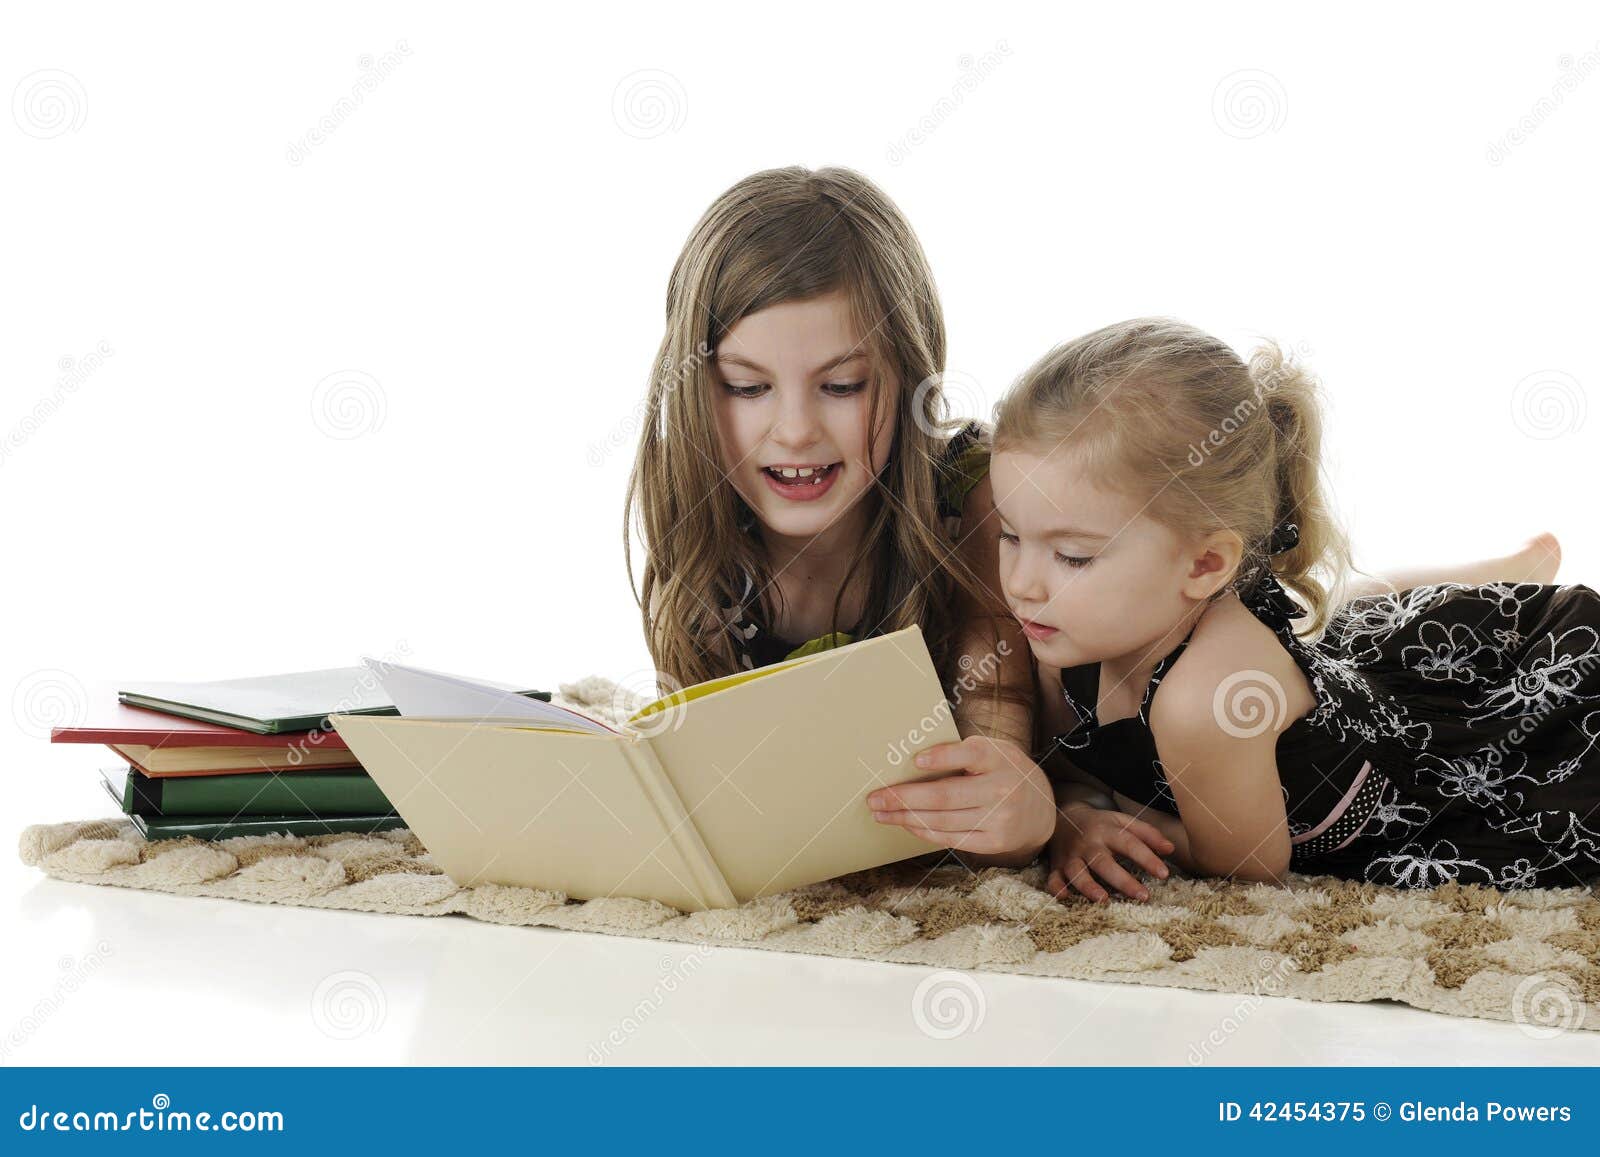 My sister to read books. Девочка читает книжку маленькой сестренке.. Мама студентка ребенок 5 лет. Ребенок рассказывает родителям Эстетика. Read a story to sister.